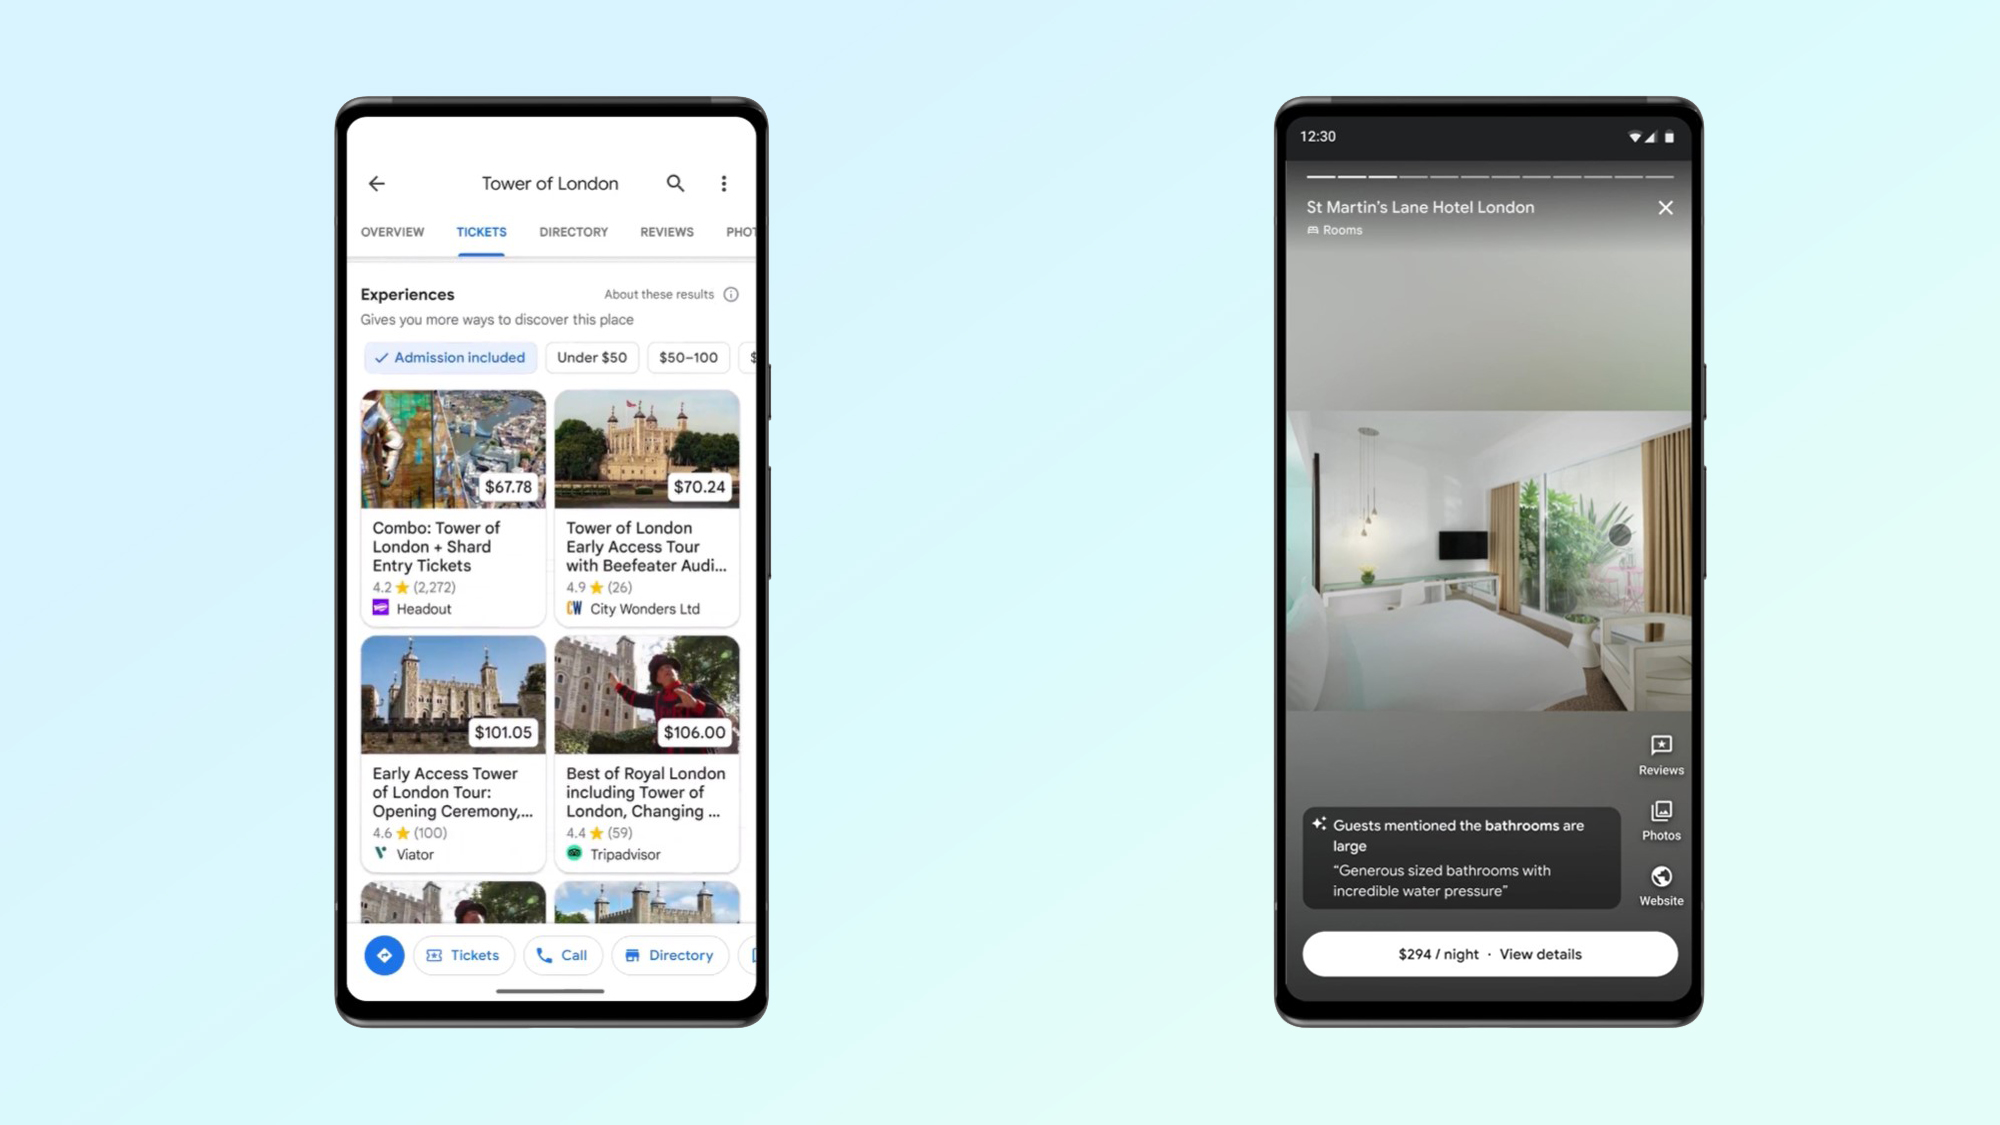 google search nouvel hôtel et choses à faire interfaces